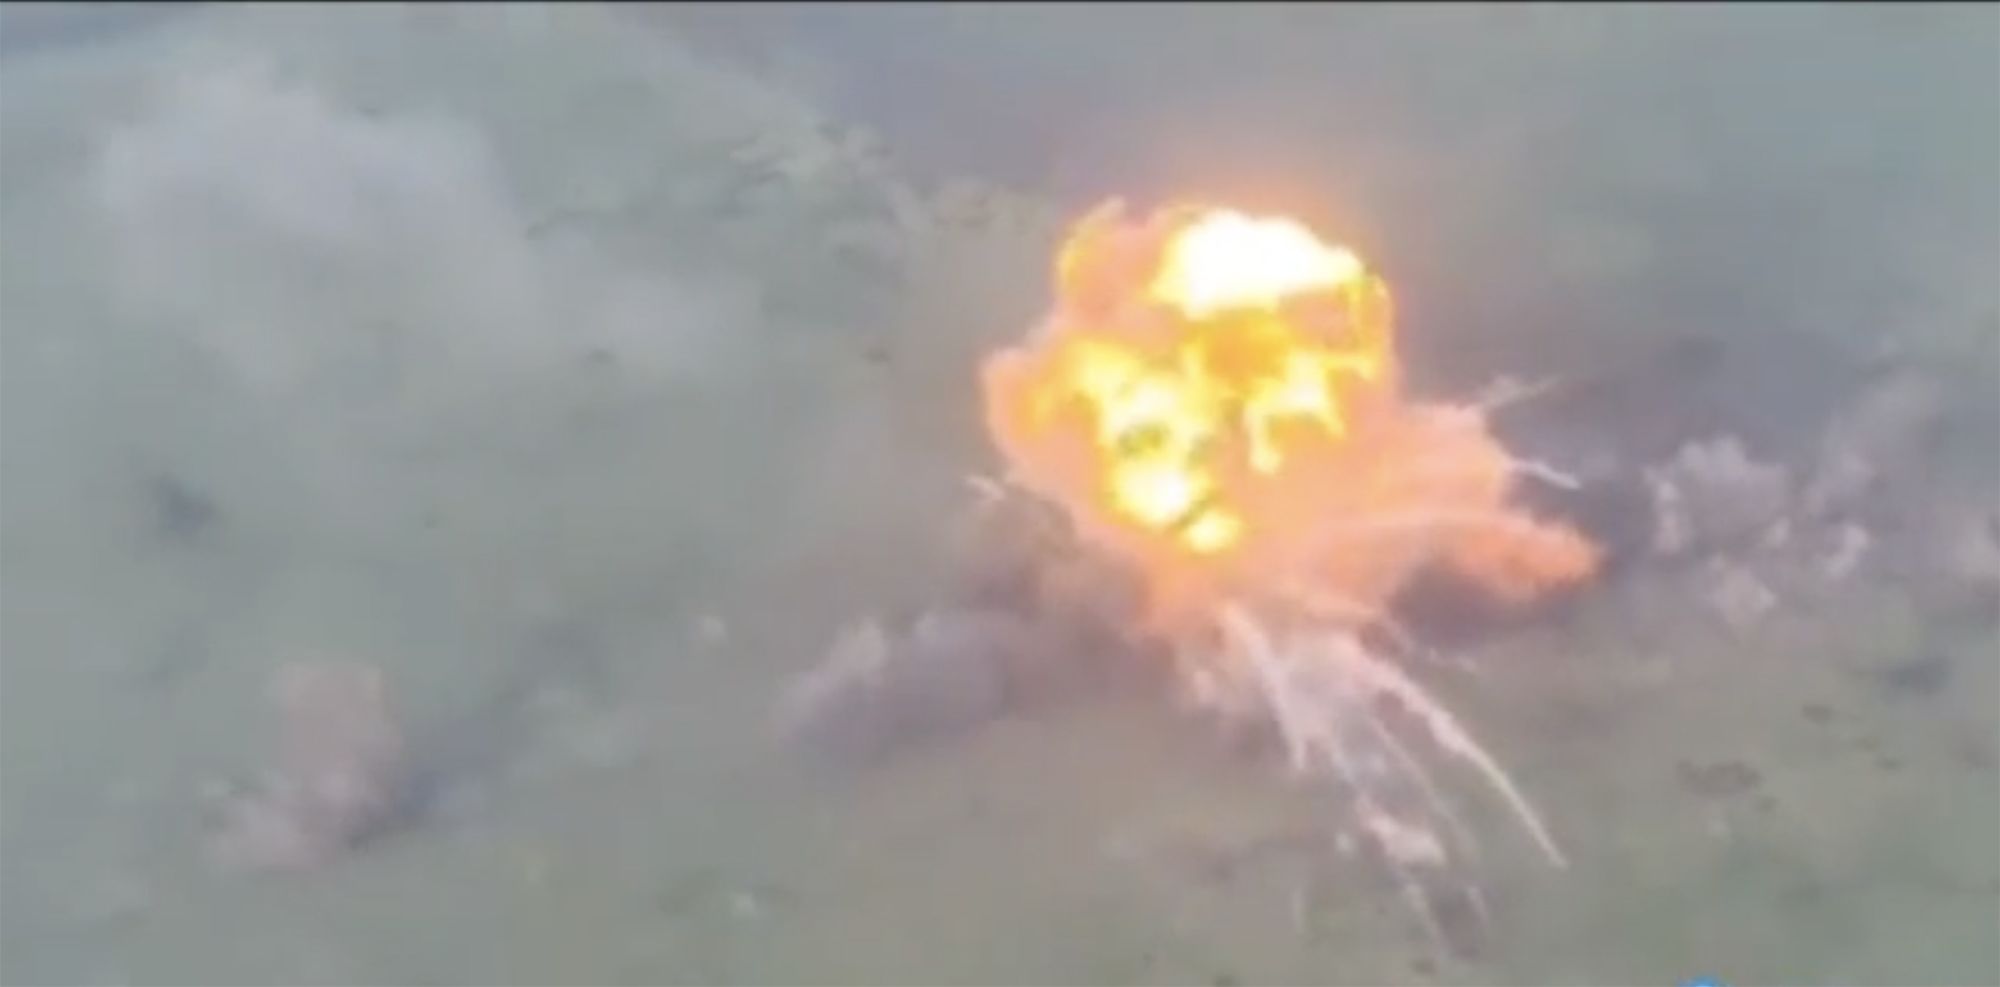 Νέα ρωσική τακτική με T-54/55 «αυτοκτονίας»: Τα φορτώνουν με εκρηκτικά και τα στέλνουν κατά των ουκρανικών θέσεων!